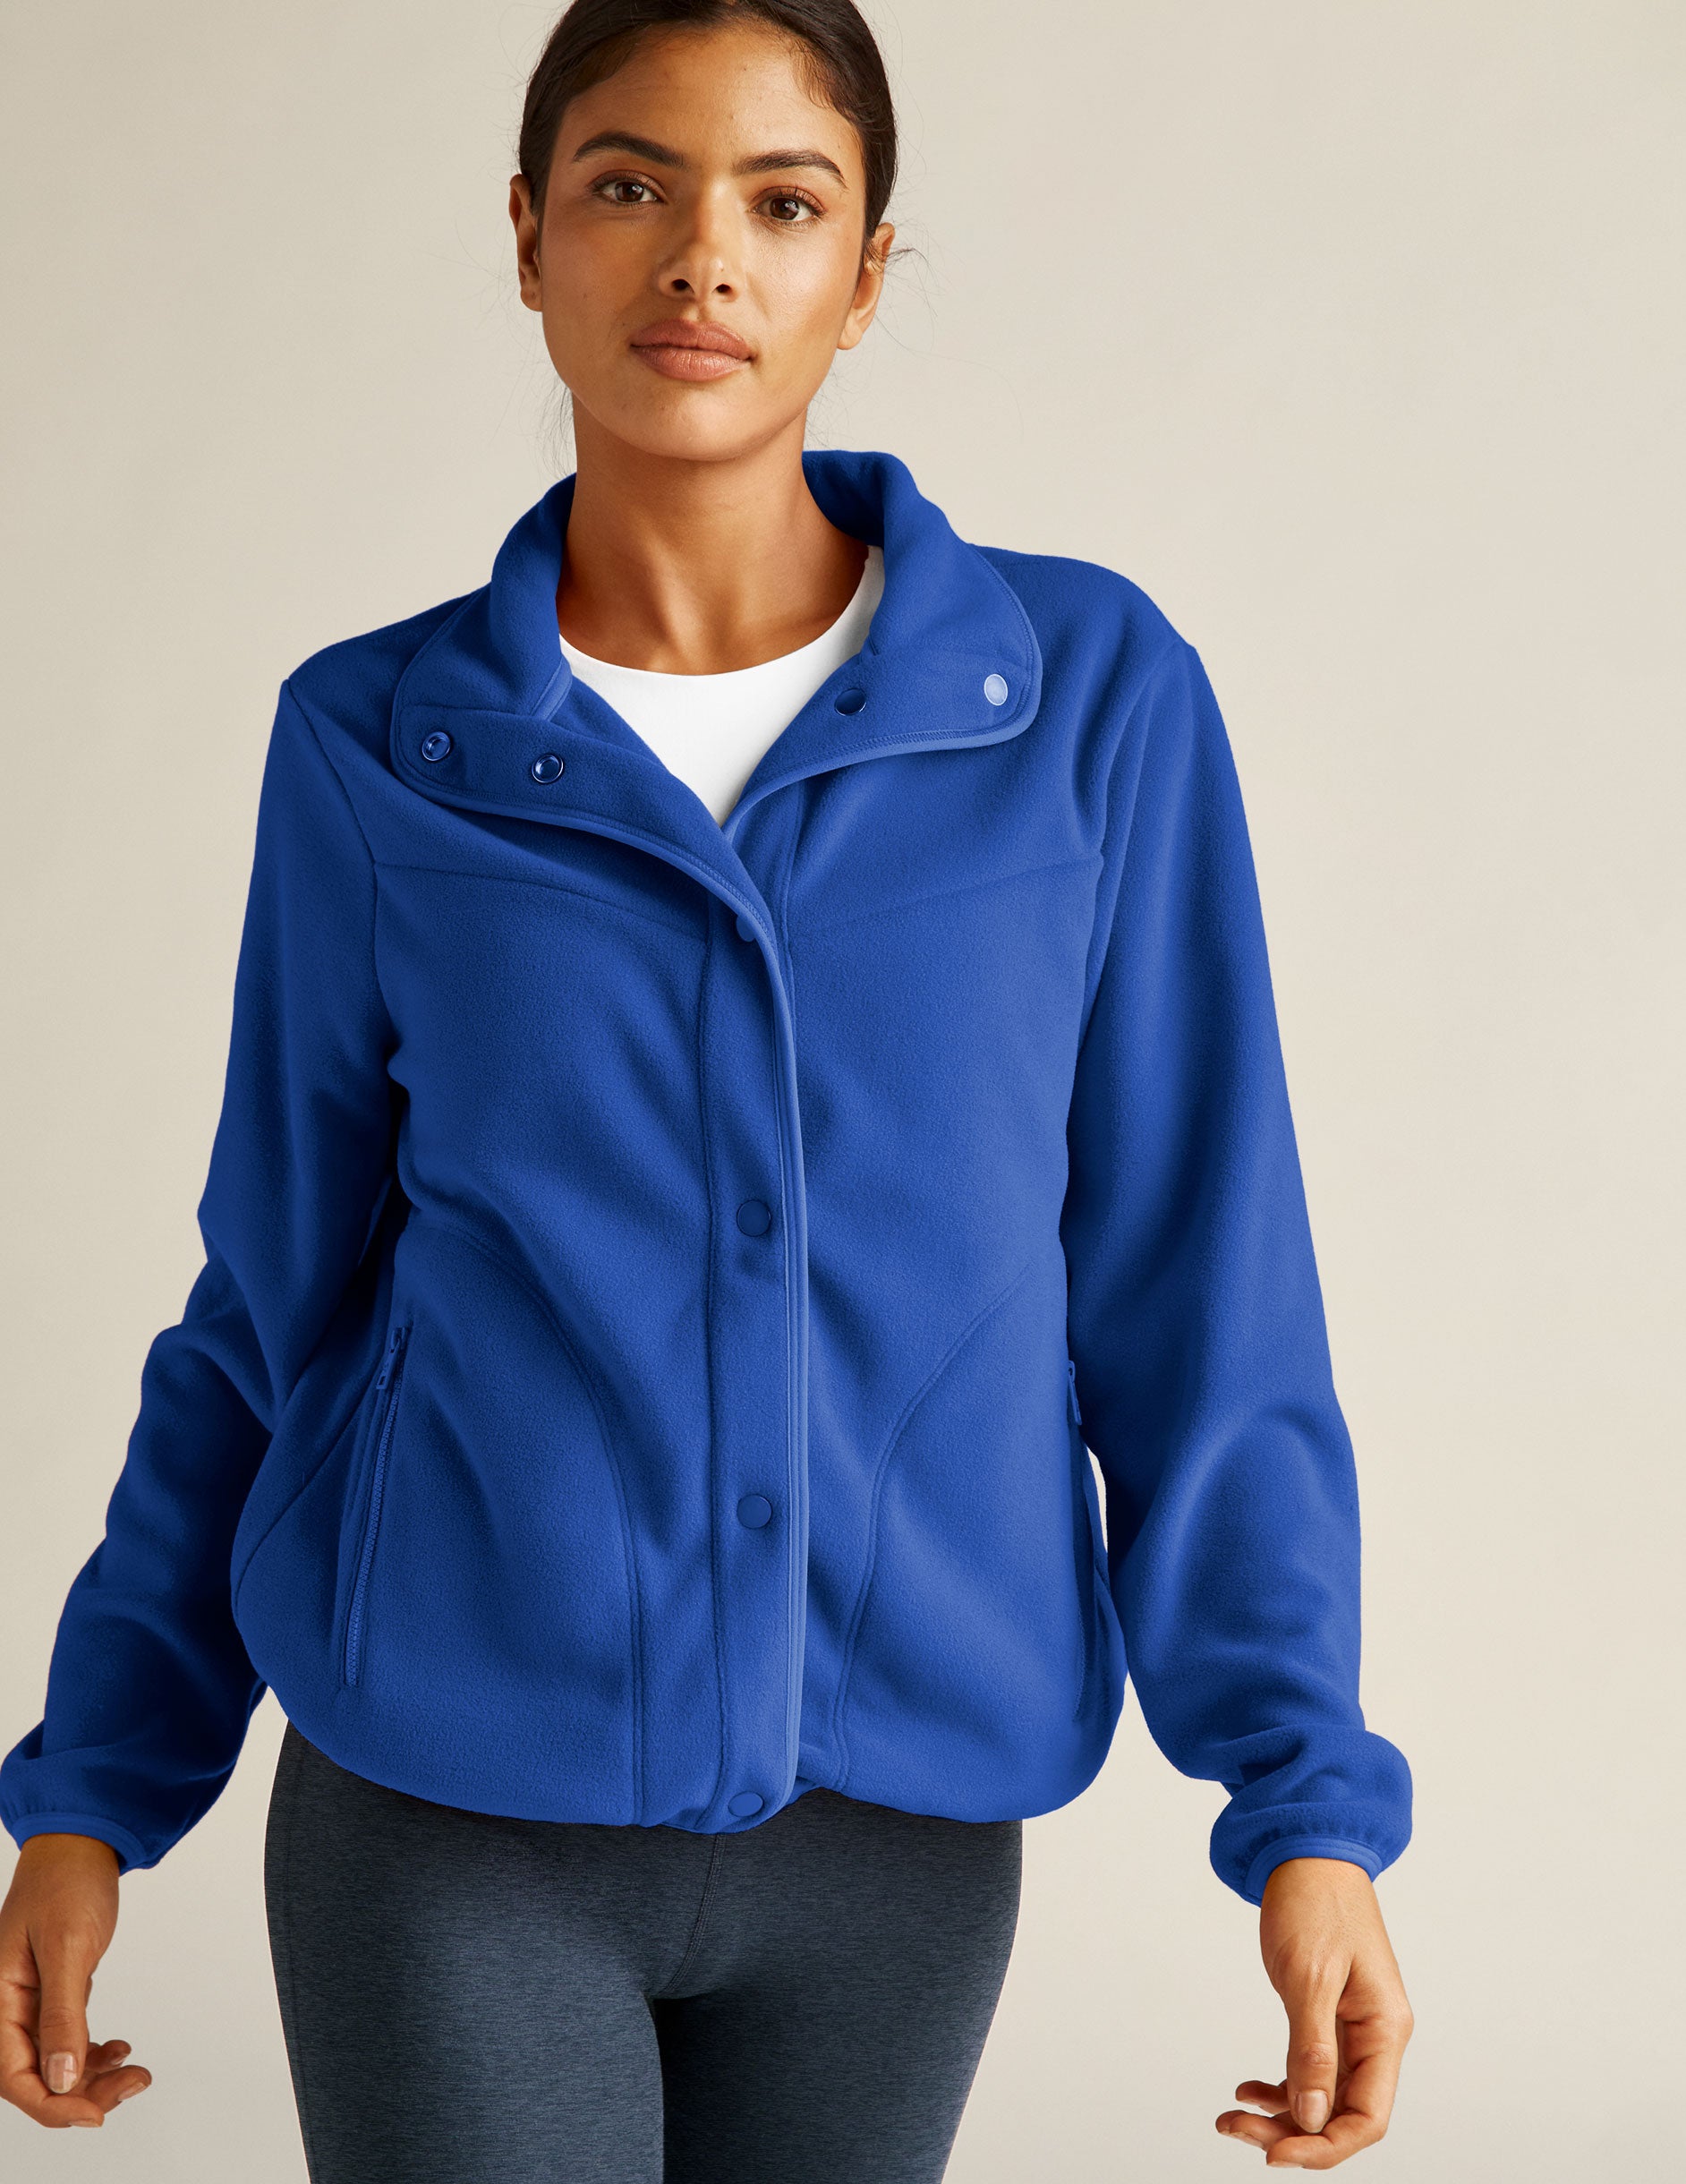 blue fleece button up jacket with zipper pockets. 